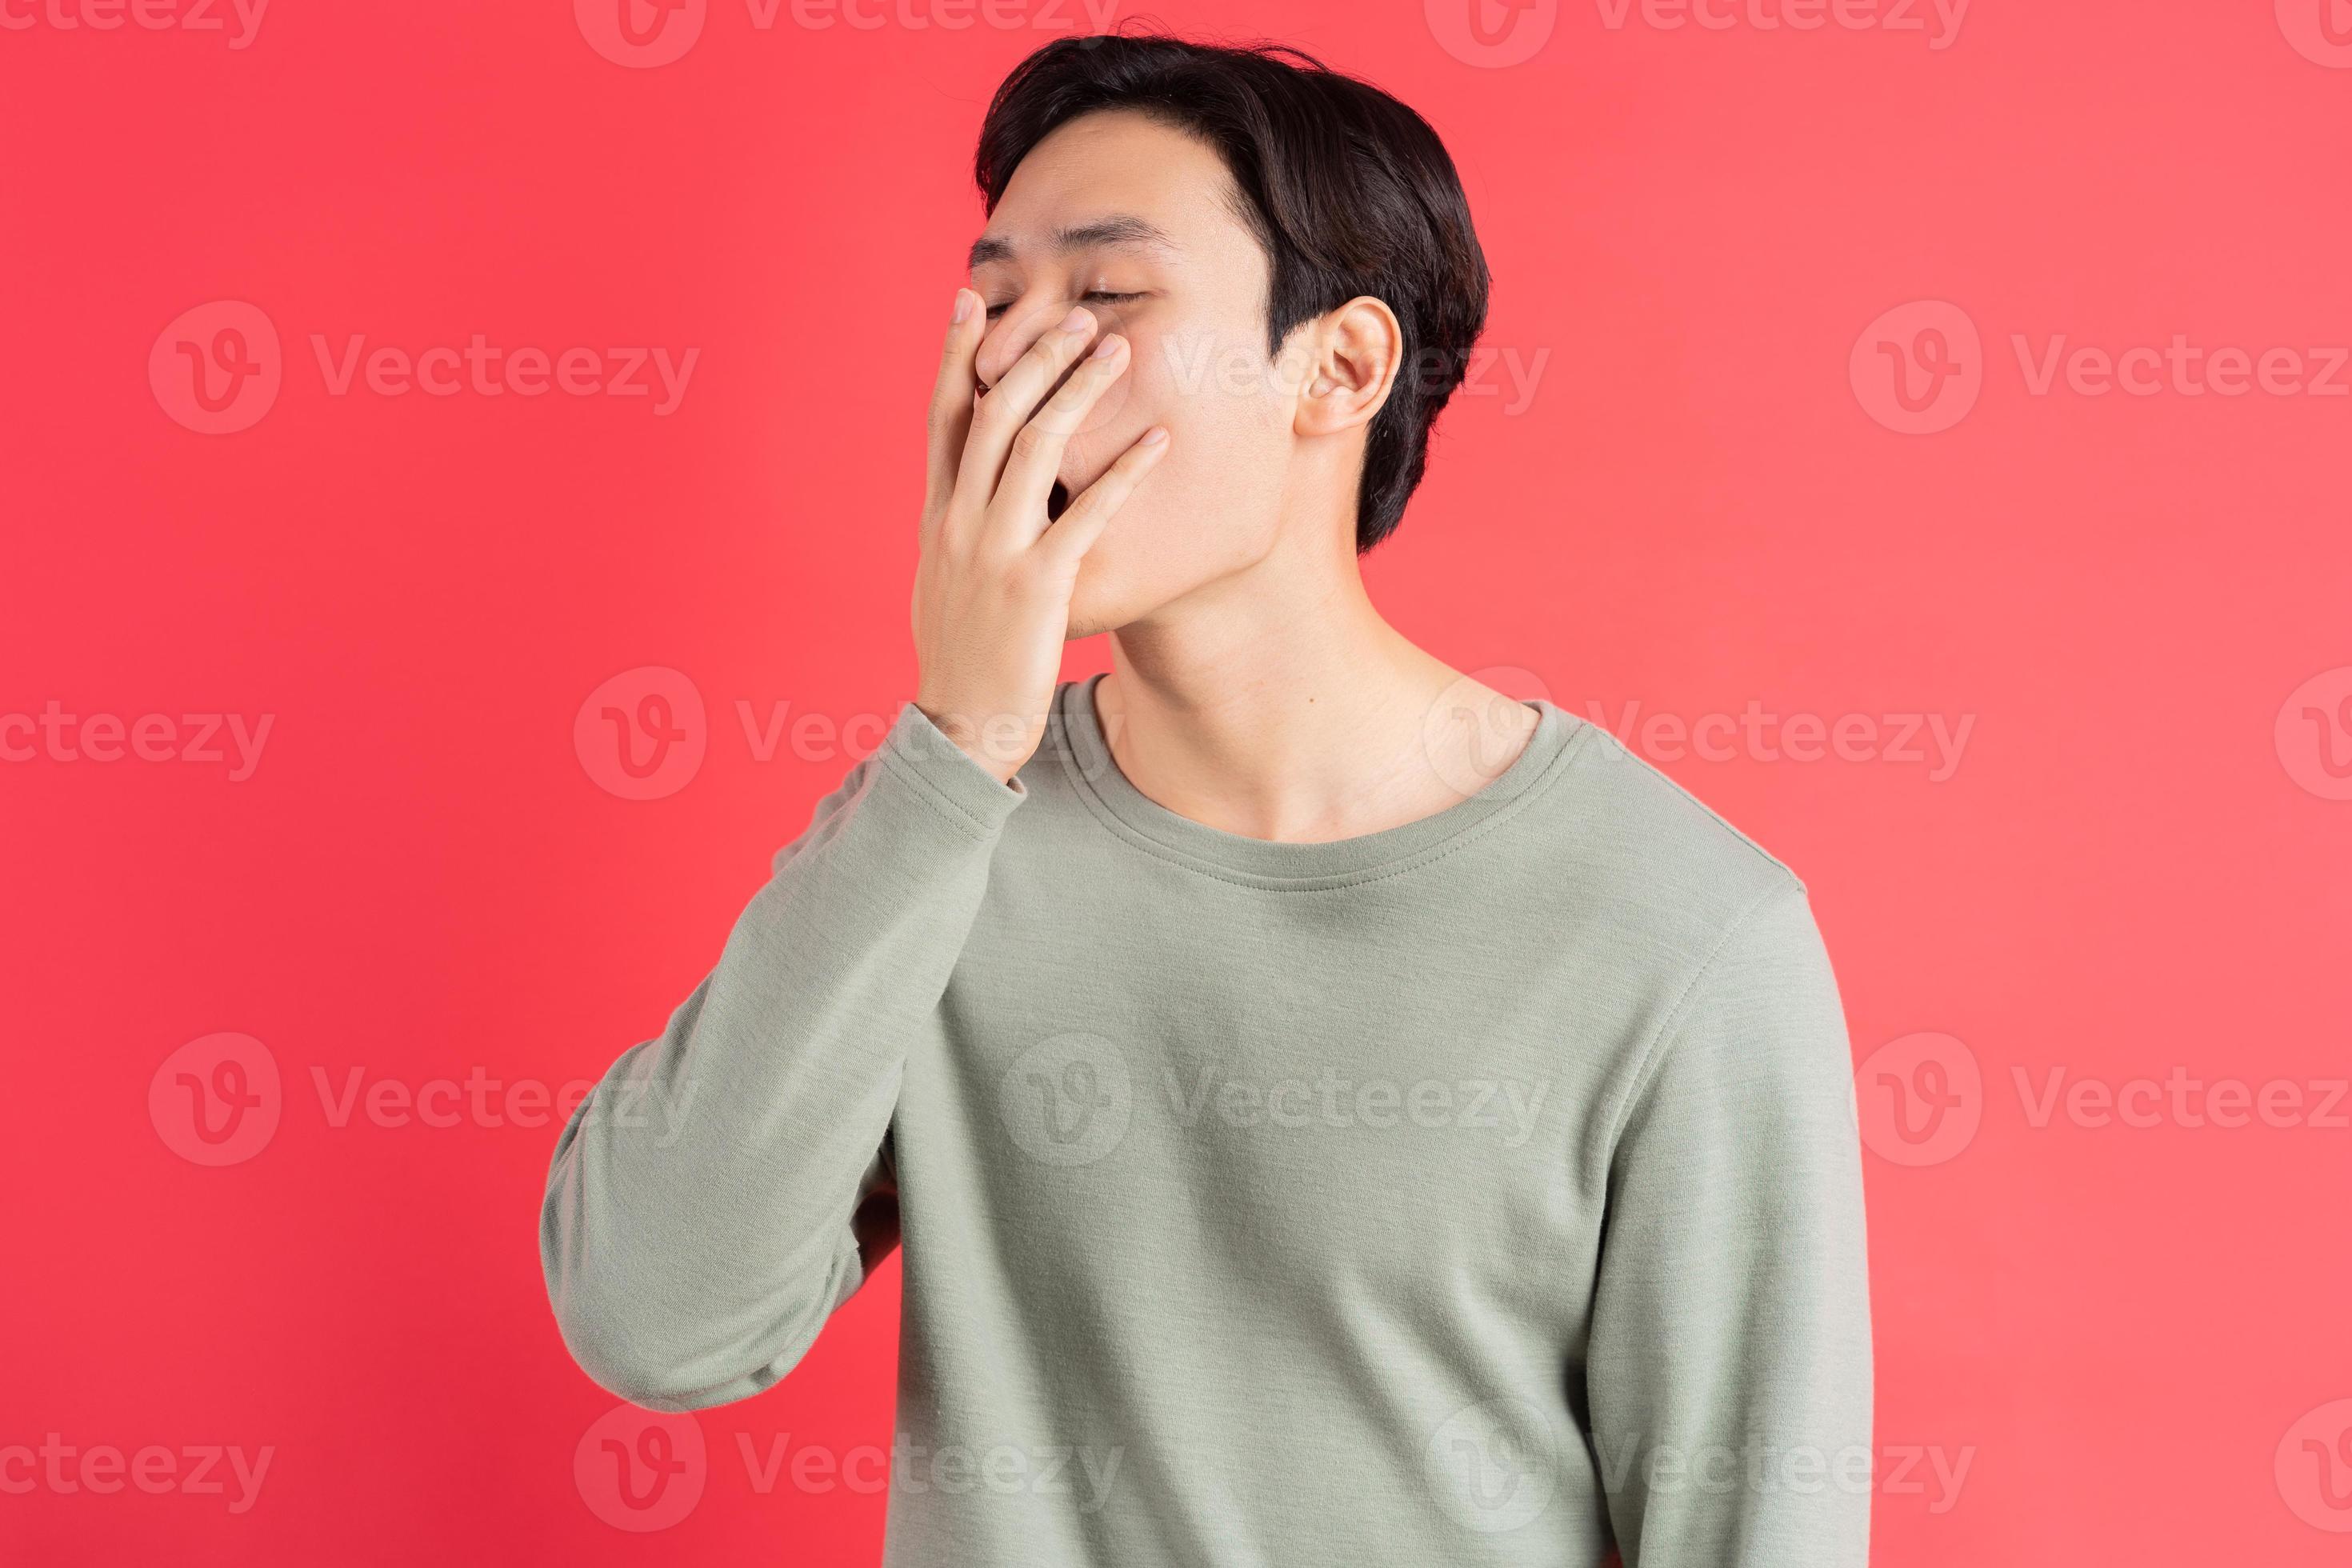 ett foto av en stilig asiatisk man som gäspar med handen över munnen